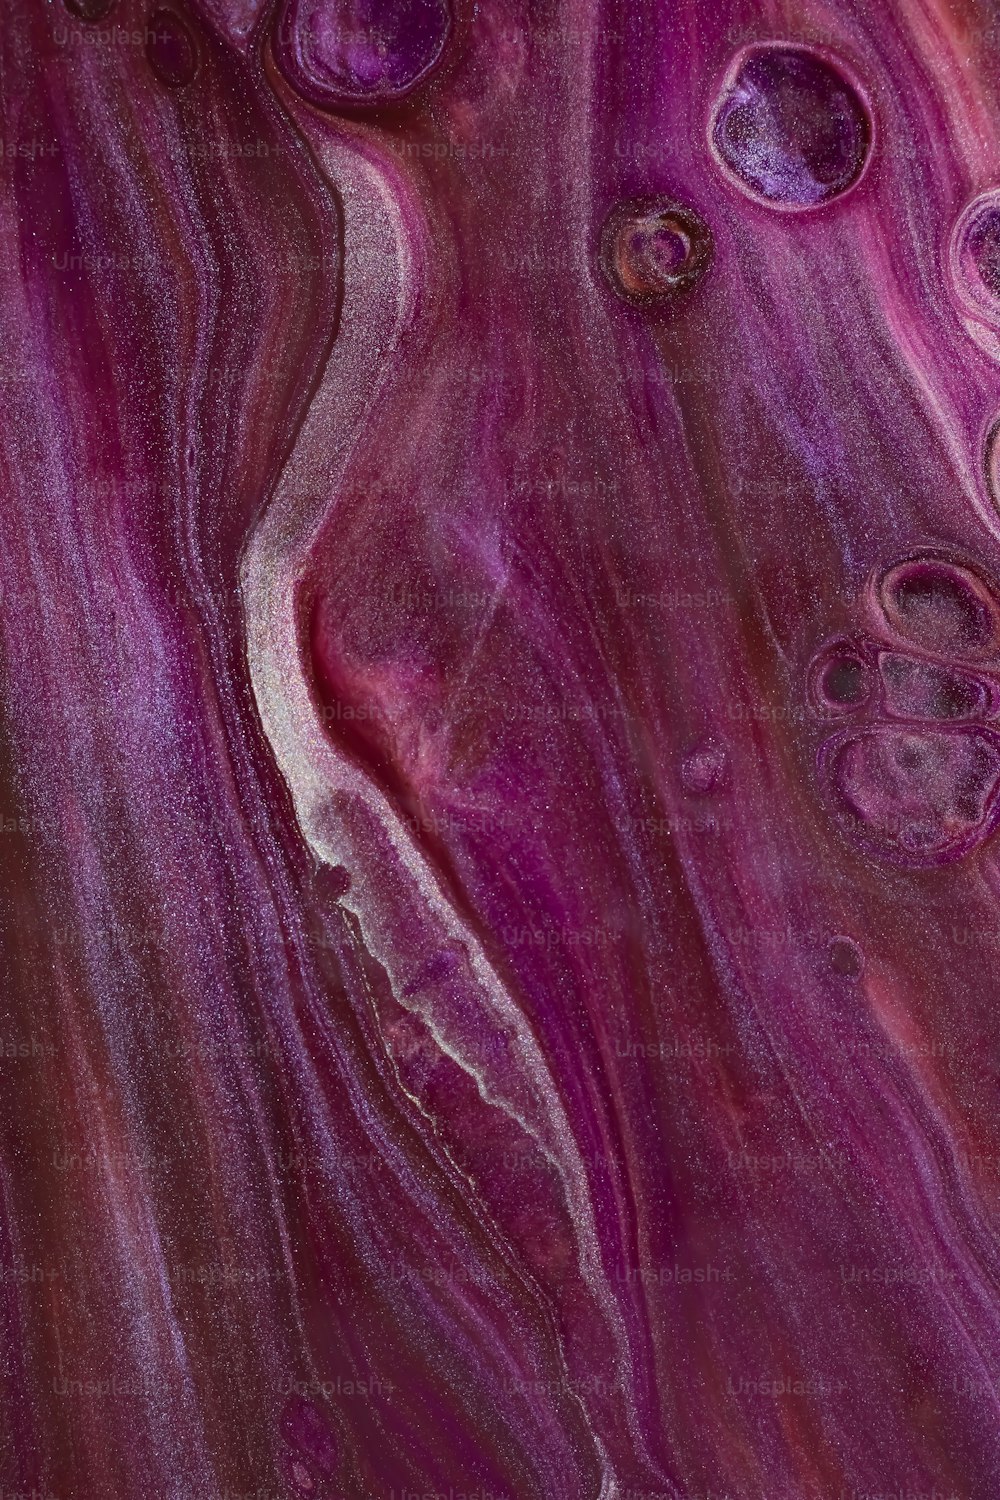 Un primer plano de una canica púrpura y blanca